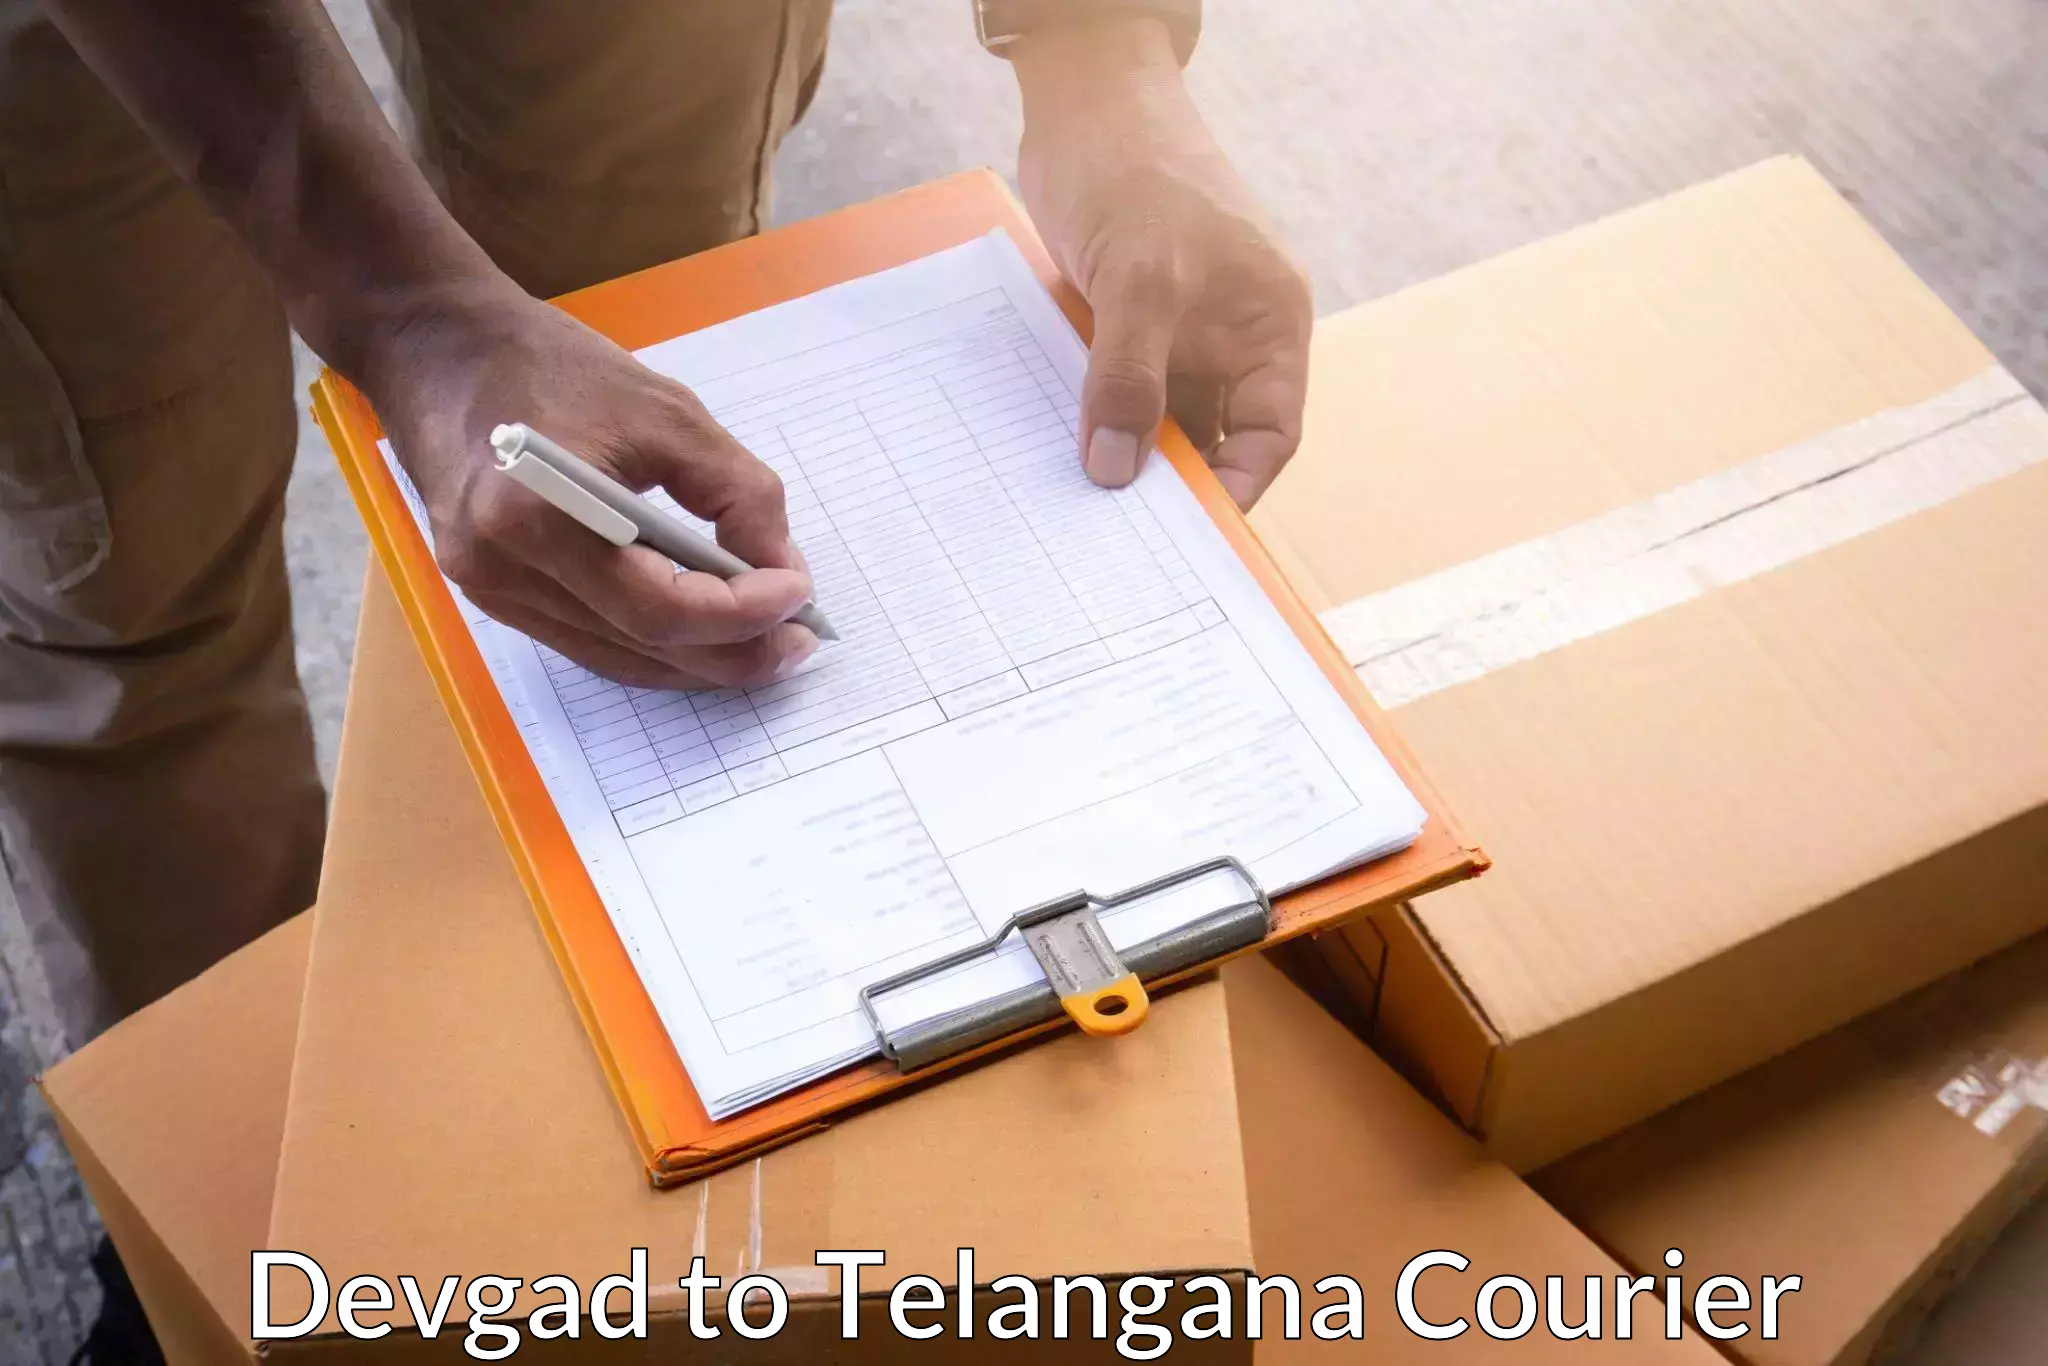 Premium courier services Devgad to Telangana